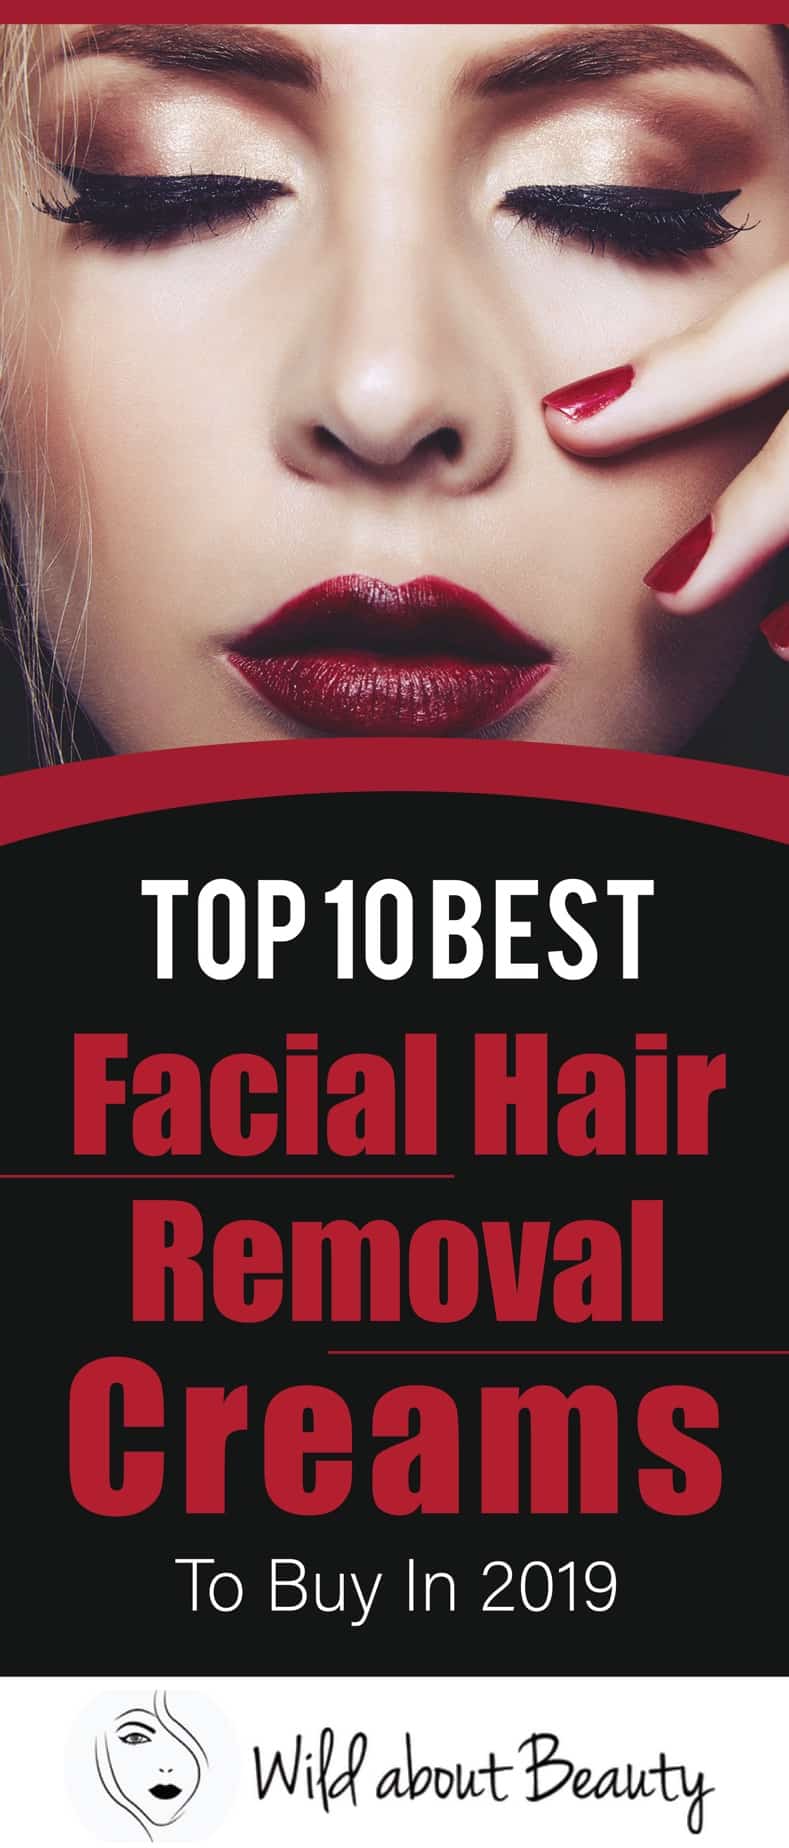 Top 10 Best Facial Hair Removal Creams